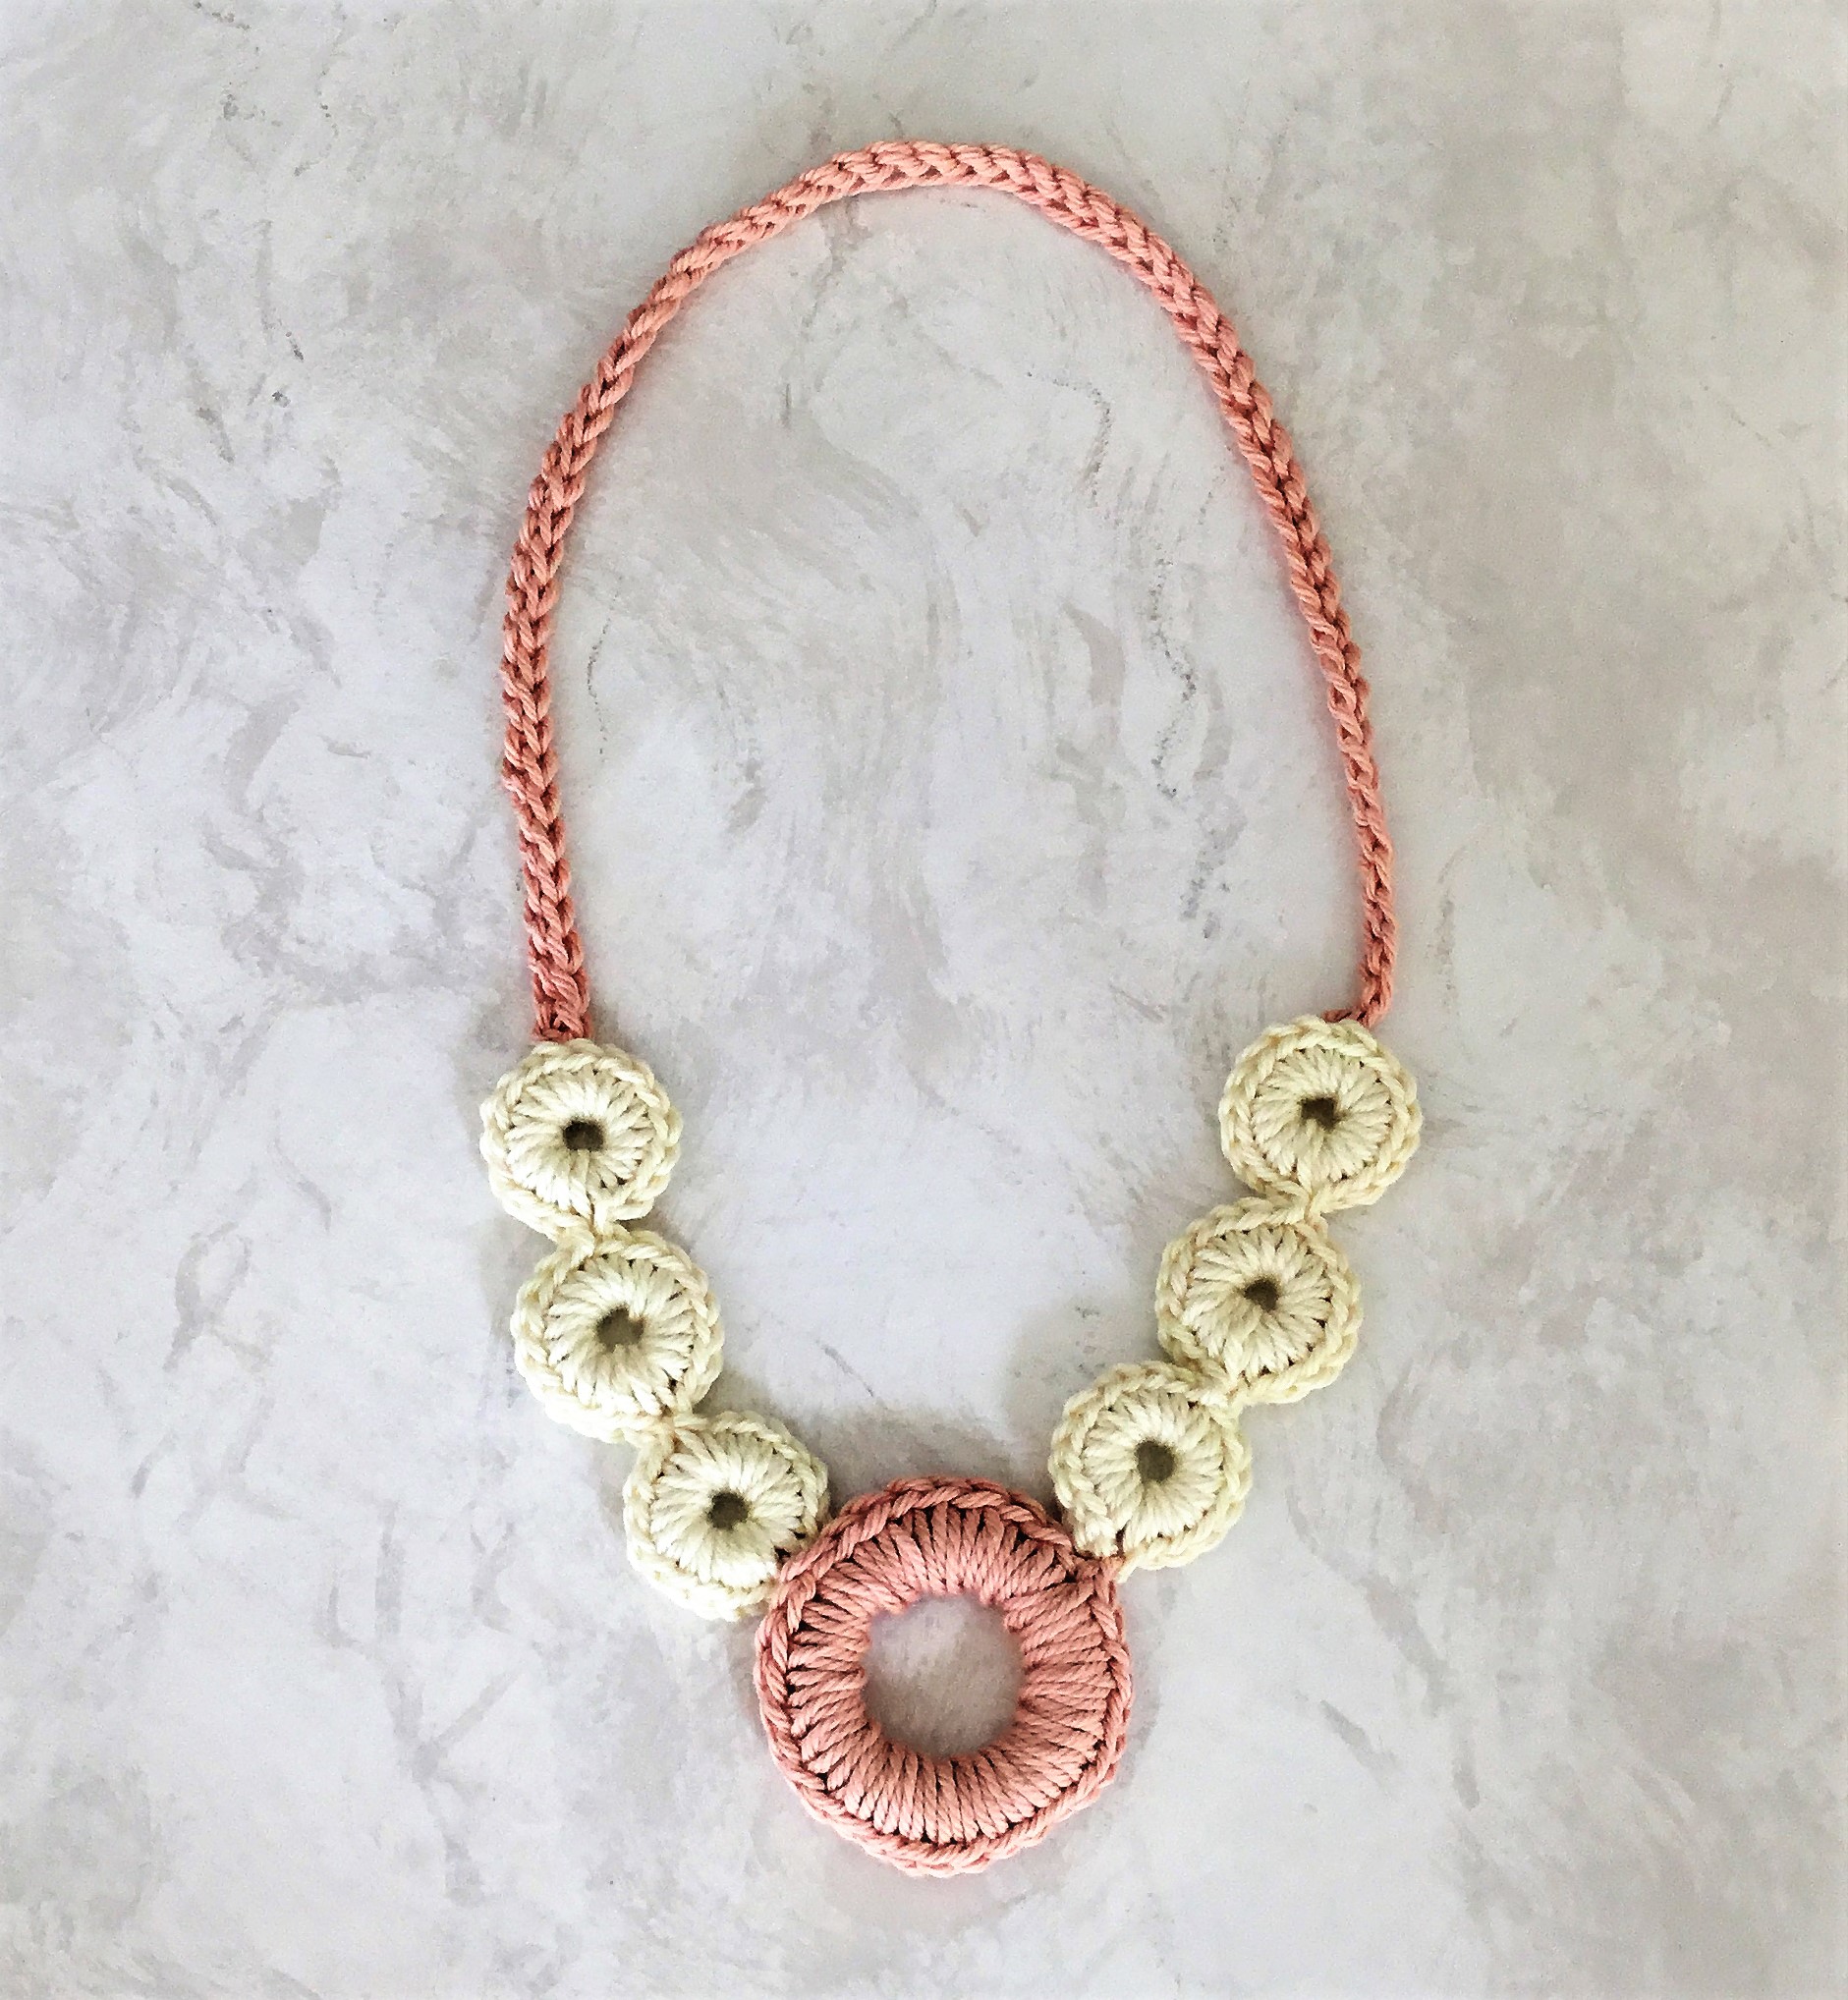 Crochet Choker Necklace Tutorial {Free Pattern} - Kirsten Holloway Designs  - Kirsten Holloway Designs